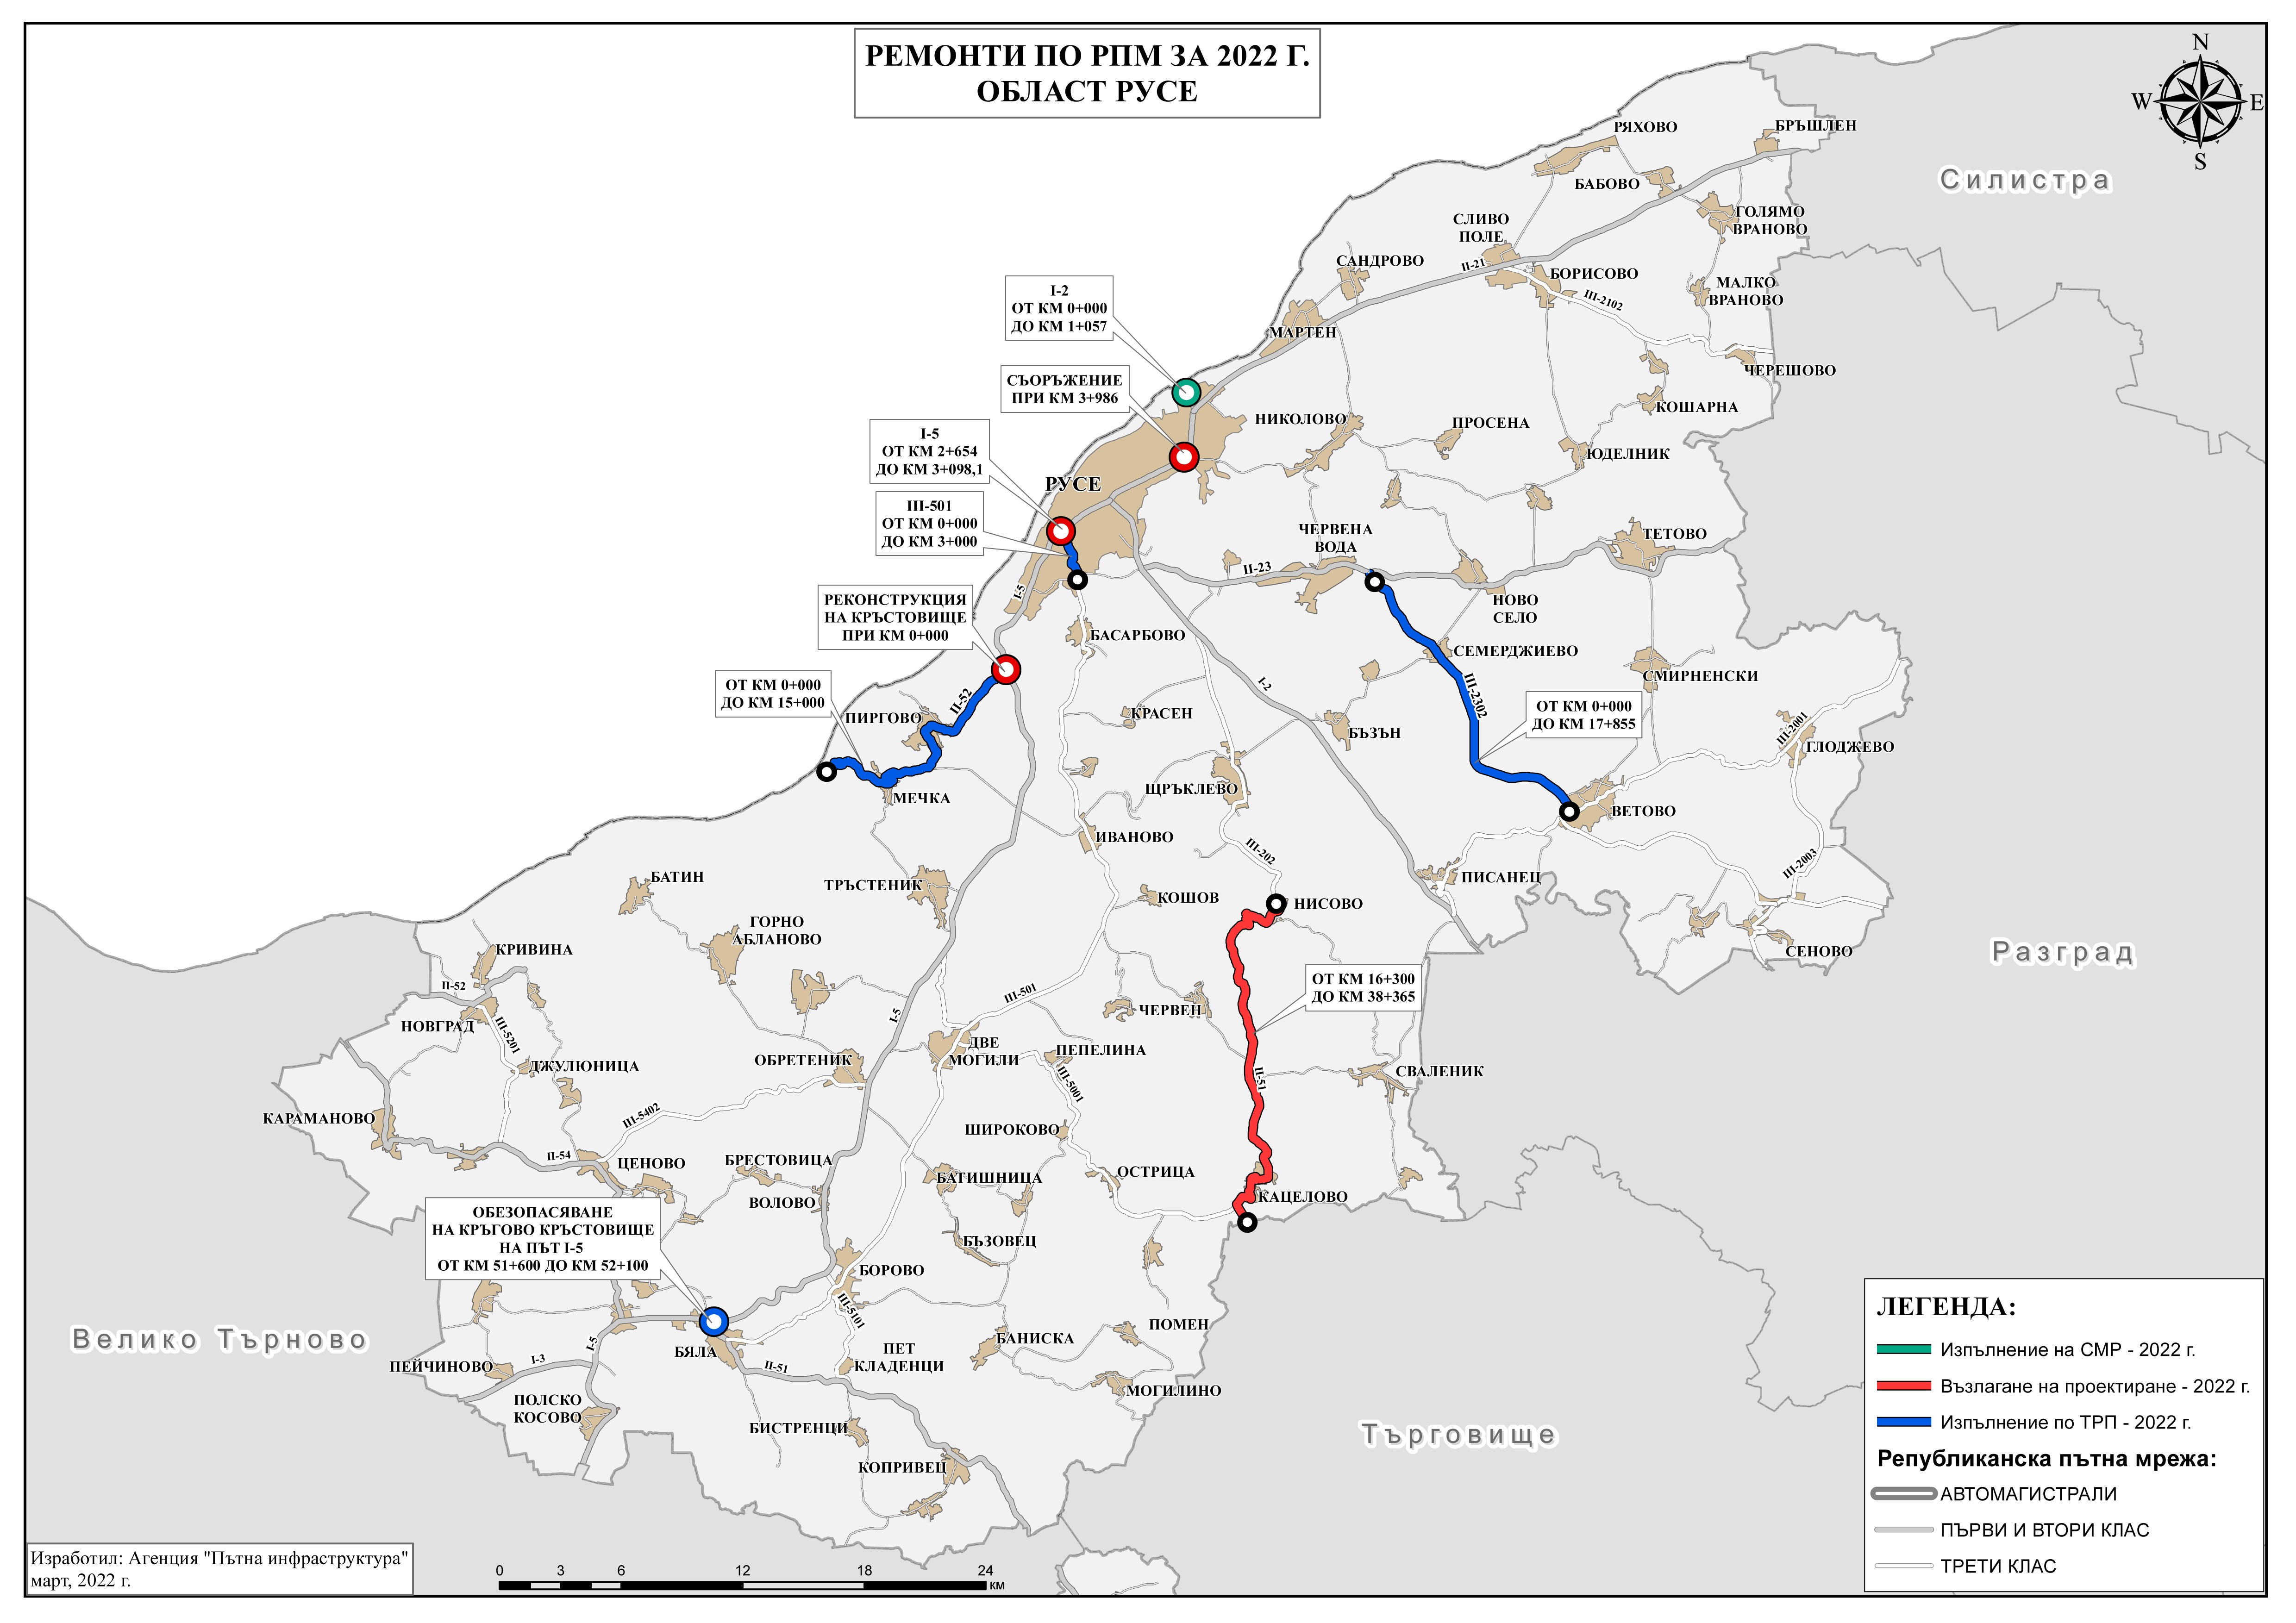 Пътната агенция представи карта с планирани 3000 километра за ремонт през тази година